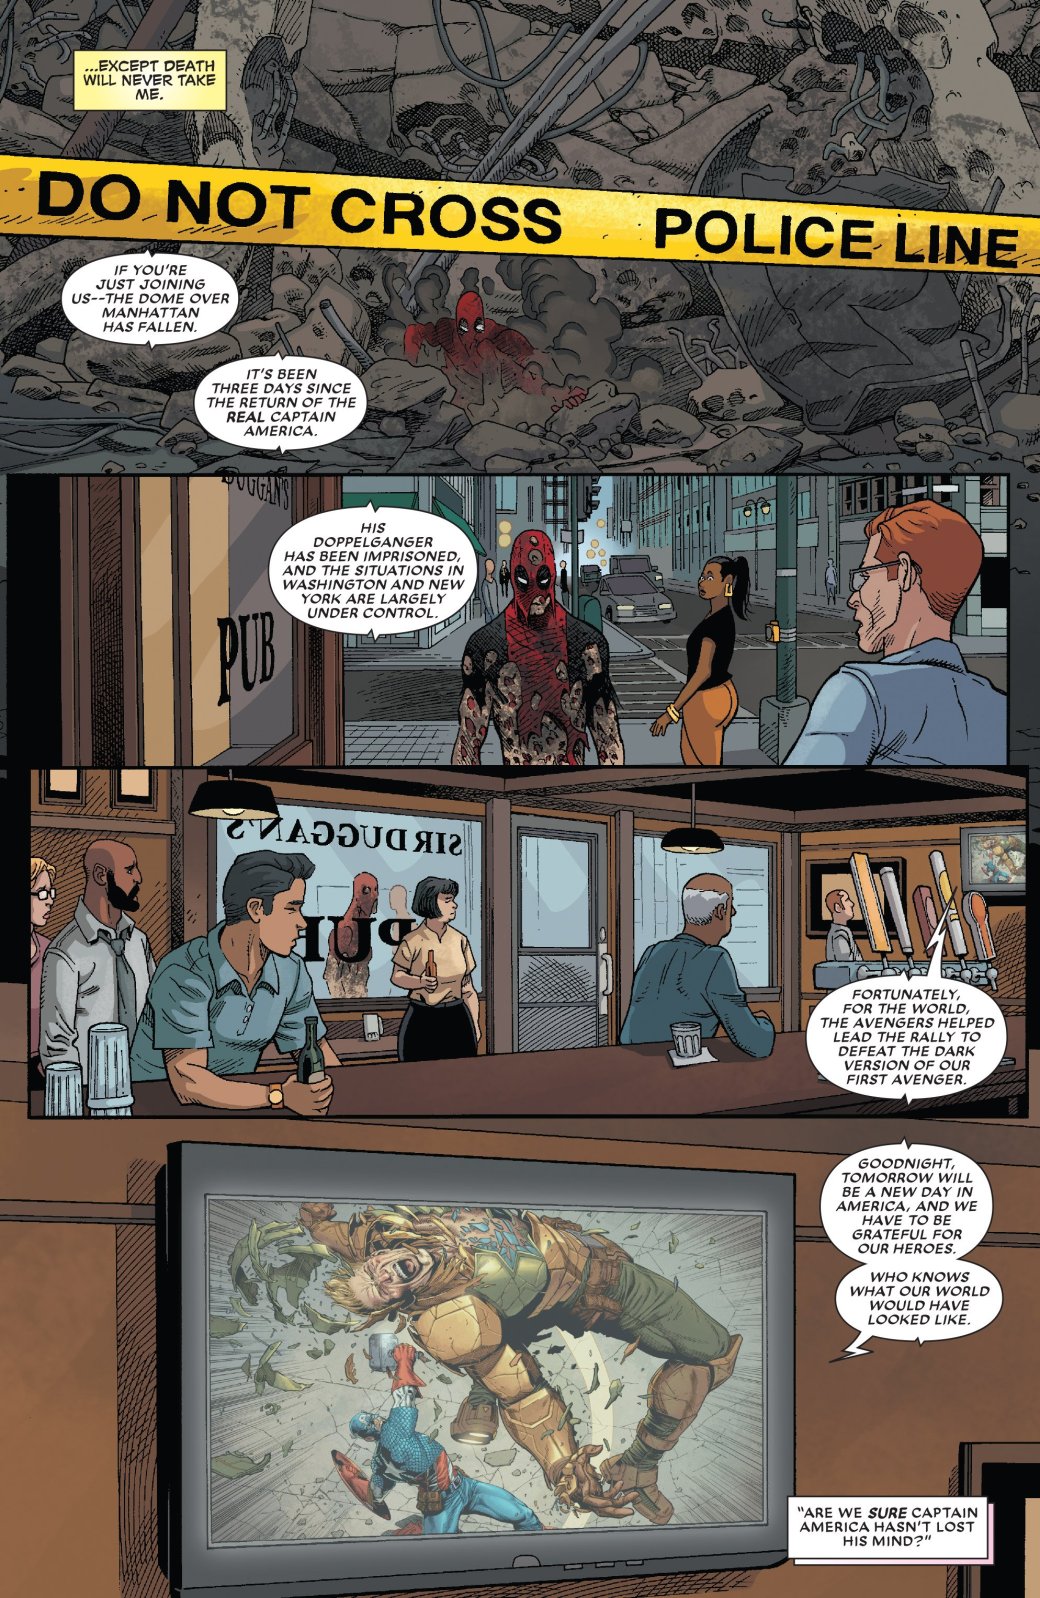 Комикс про Дэдпула подтверждает — теперь у Marvel два Капитана Америка. - Изображение 4